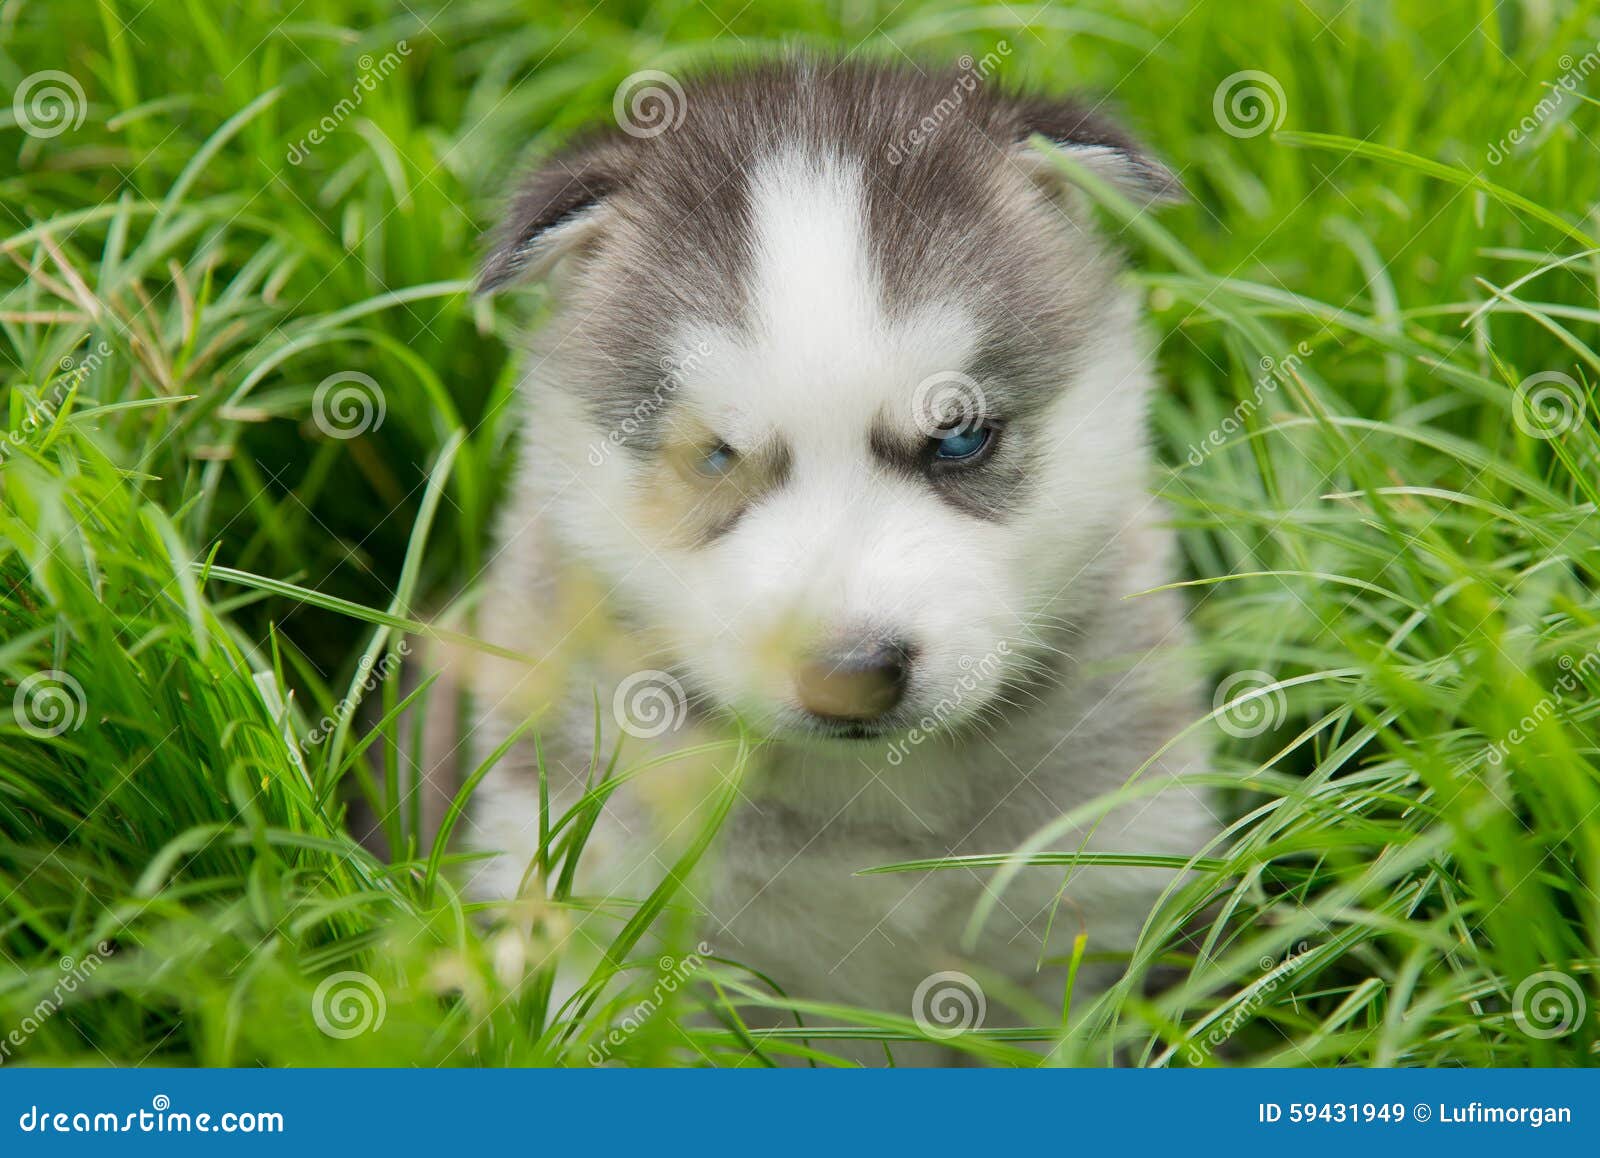 蓝眼睛西伯利亚爱斯基摩人看在绿草的小狗lyingand.图片